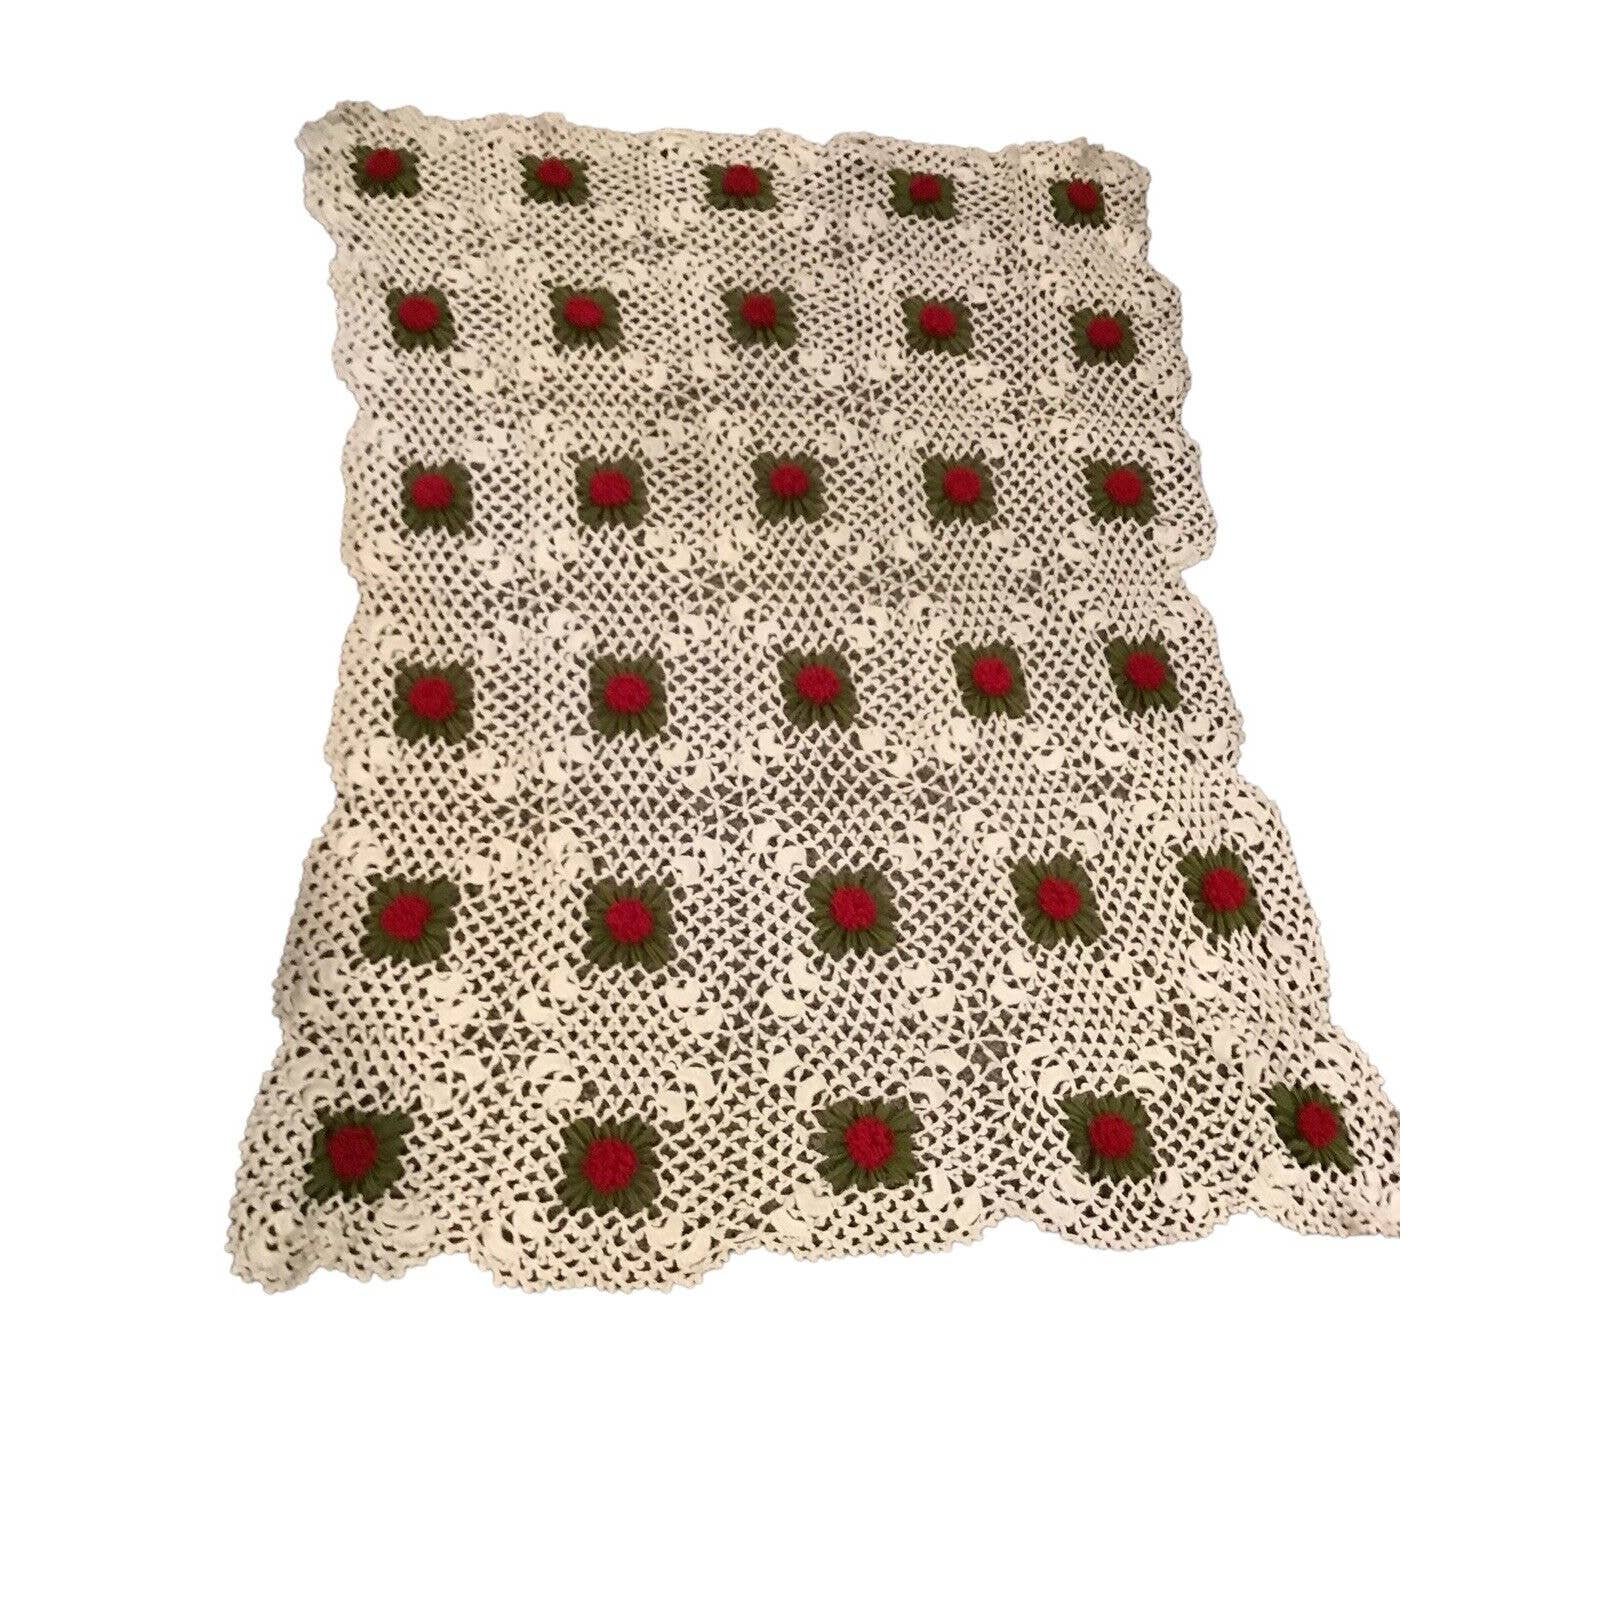 Vintage Hand Crochet 3D Flowers Afghan Blanket Throw 48